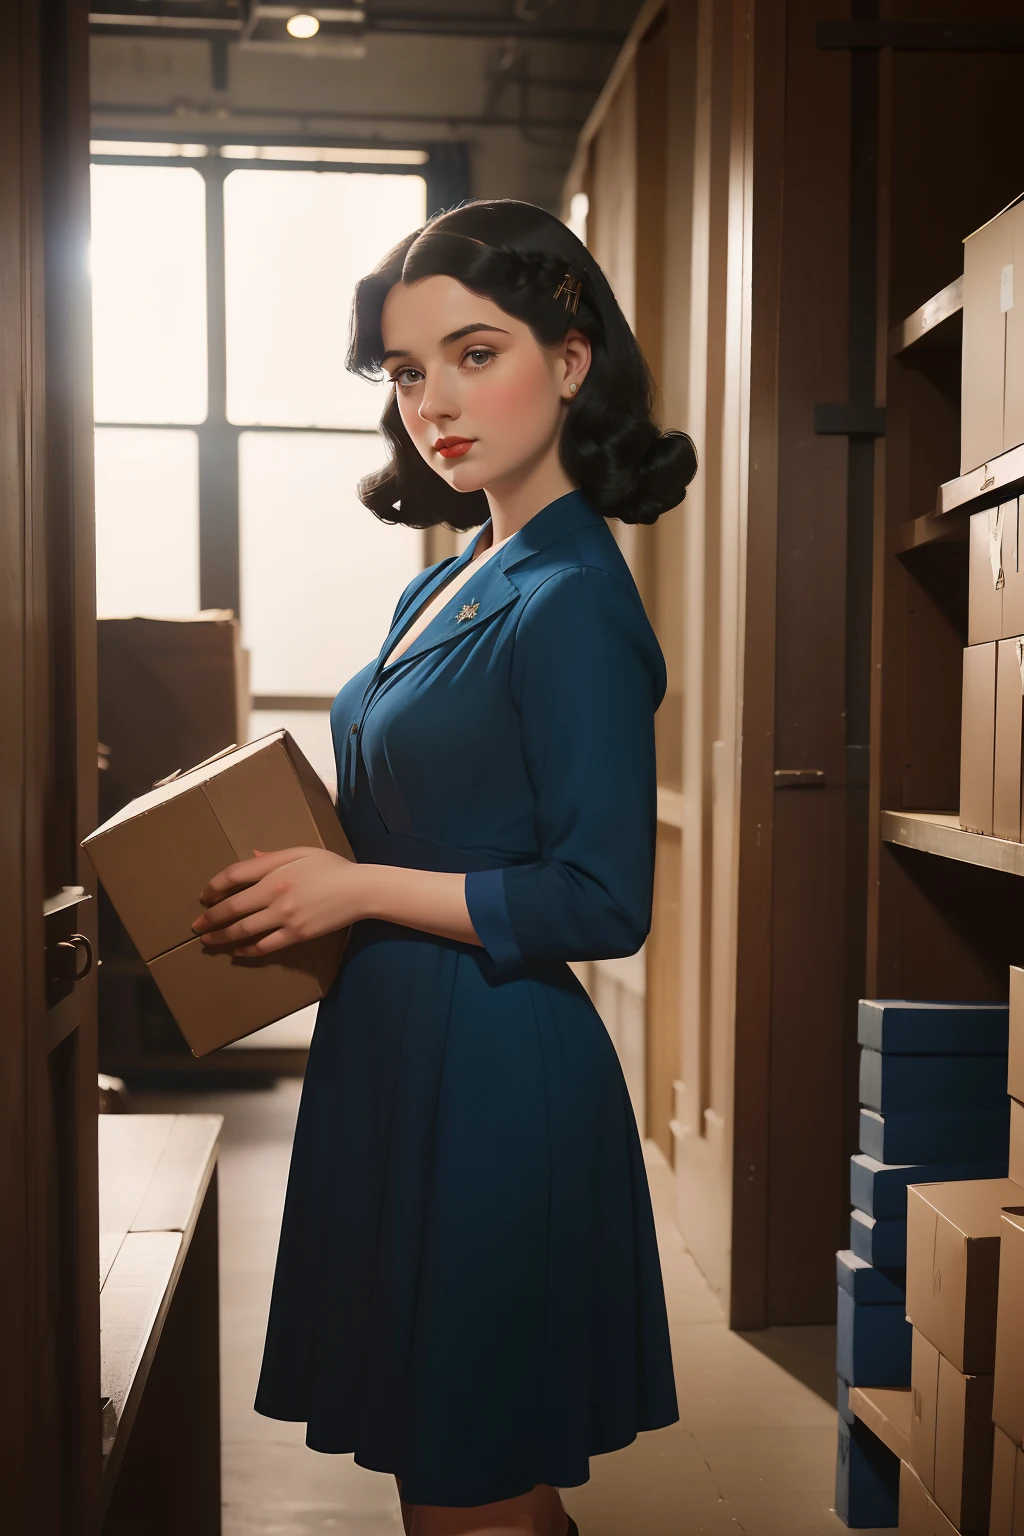 ปี: 1946. ที่ตั้ง: วอชิงตัน. หญิงสาวยุคก่อนราฟาเอล มีผมสีดำและชุดสีน้ำเงิน, ภายในโกดังที่เต็มไปด้วยกล่อง, แอบผ่านเอกสารลับ ((เสื้อผ้าปี 1940)) ((ทรงผมปี 1940)) ((ในรูปแบบของ "OMITB")) ((สไตล์ภาพยนตร์))